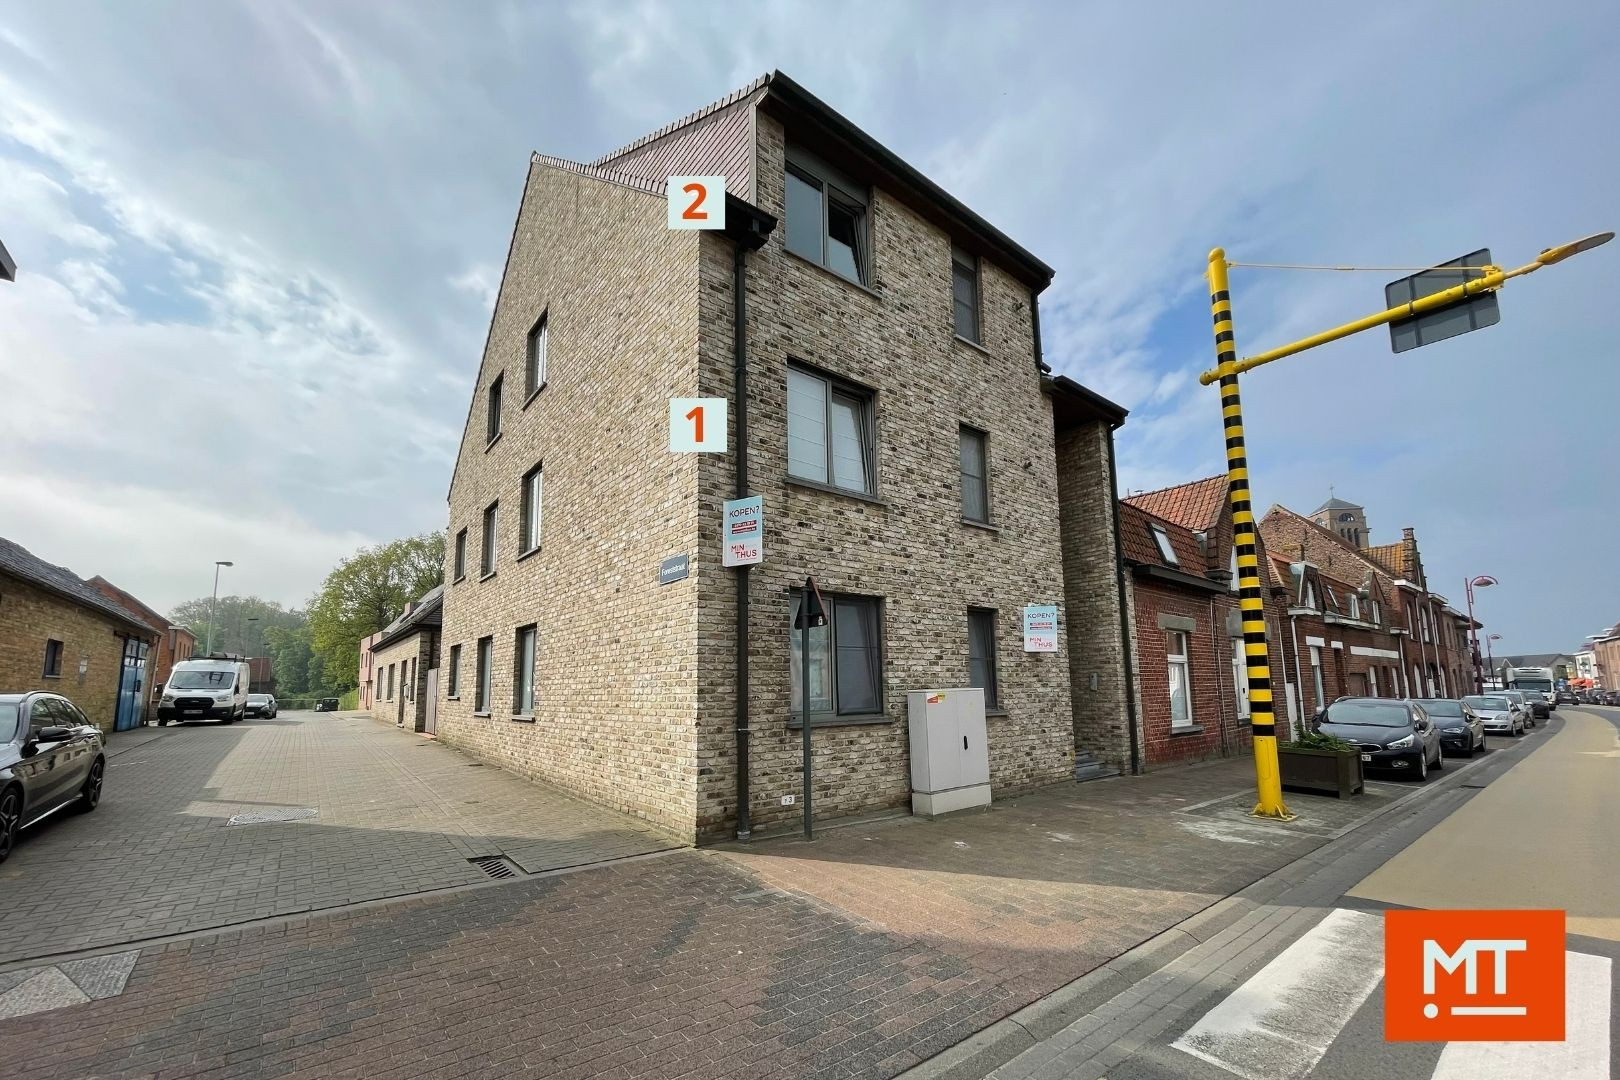 Appartementen (met garages) te koop in het centrum van Zonnebeke foto 3